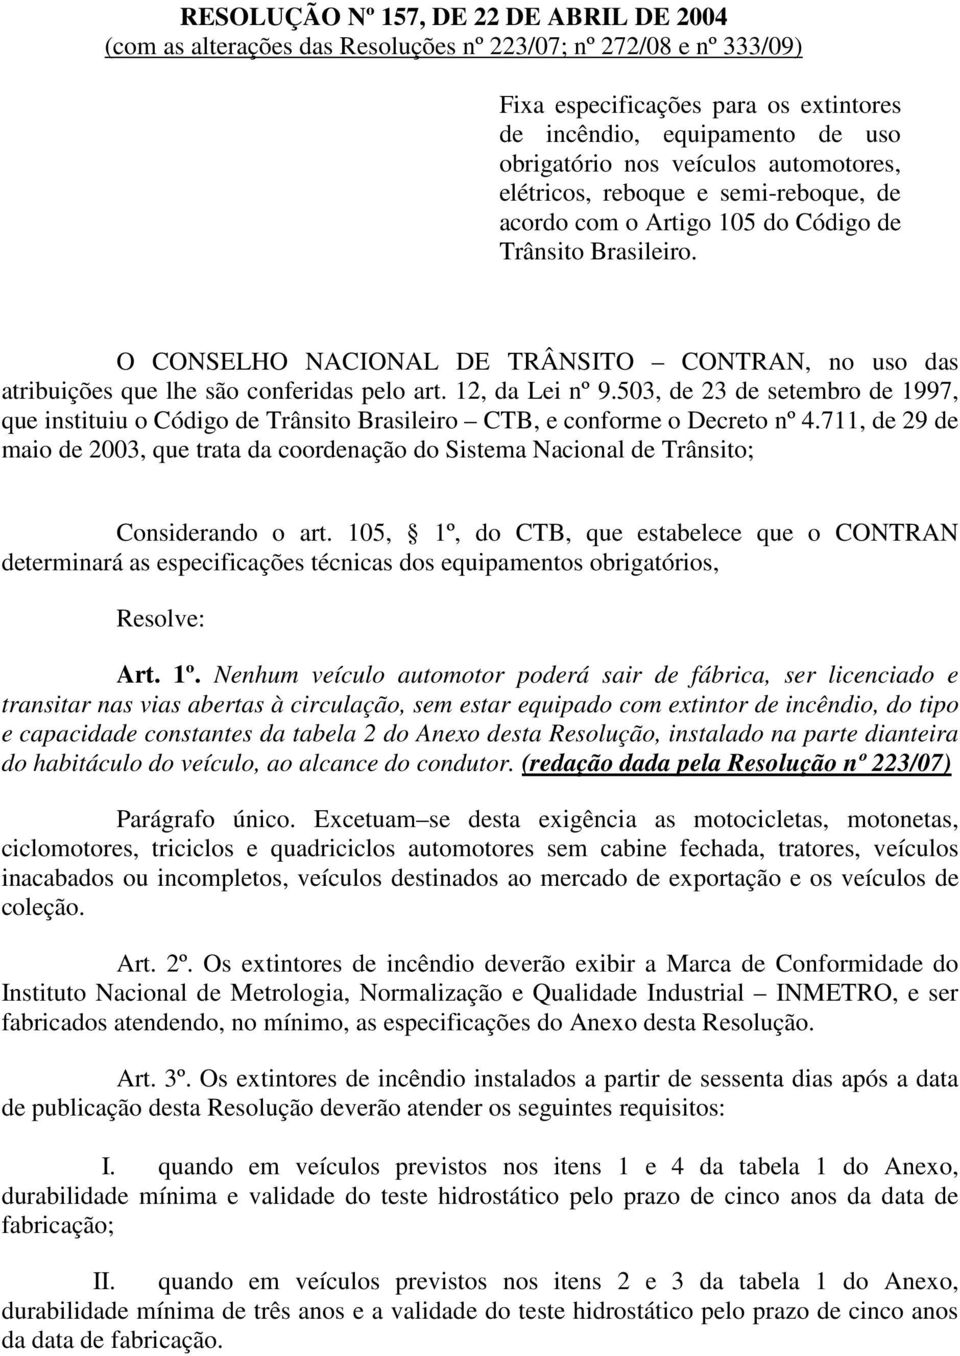 O CONSELHO NACIONAL DE TRÂNSITO CONTRAN, no uso das atribuições que lhe são conferidas pelo art. 12, da Lei nº 9.